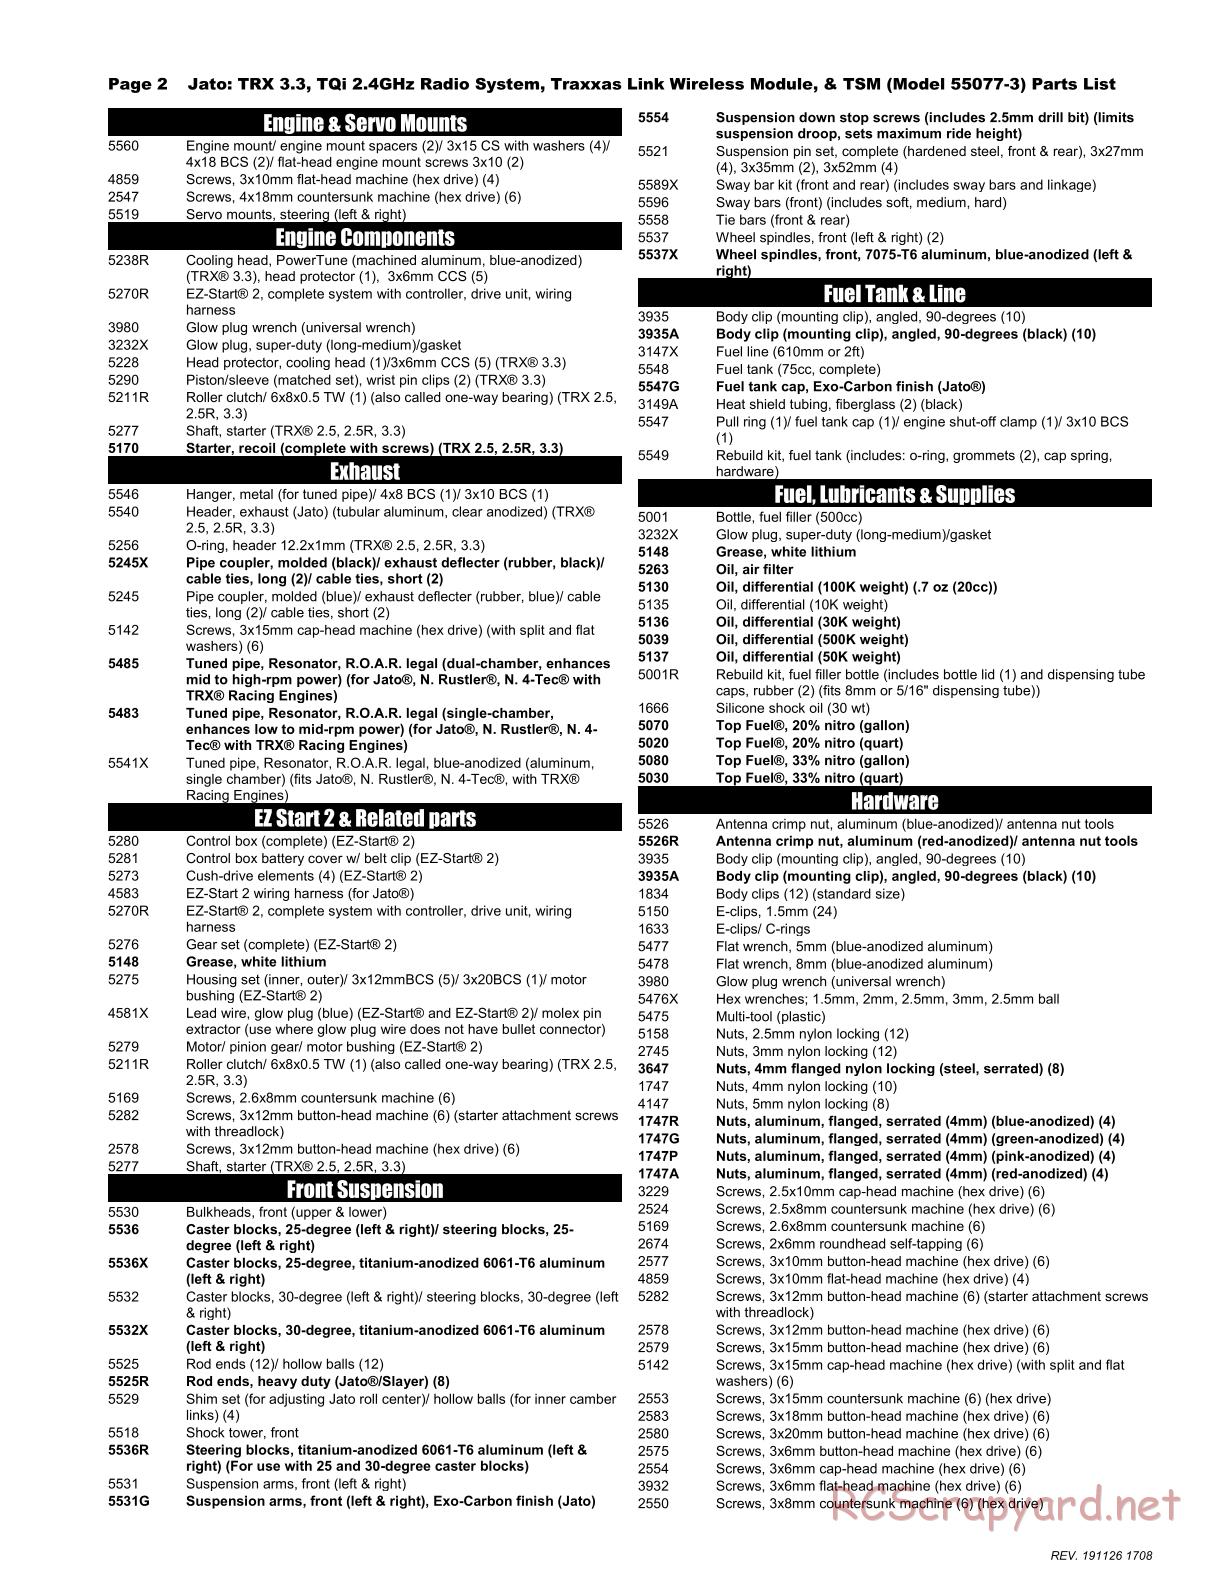 Traxxas - Jato 3.3 TSM - Parts List - Page 2